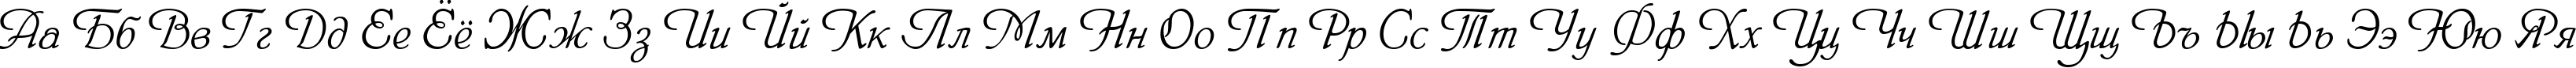 Пример написания русского алфавита шрифтом HeinrichScript